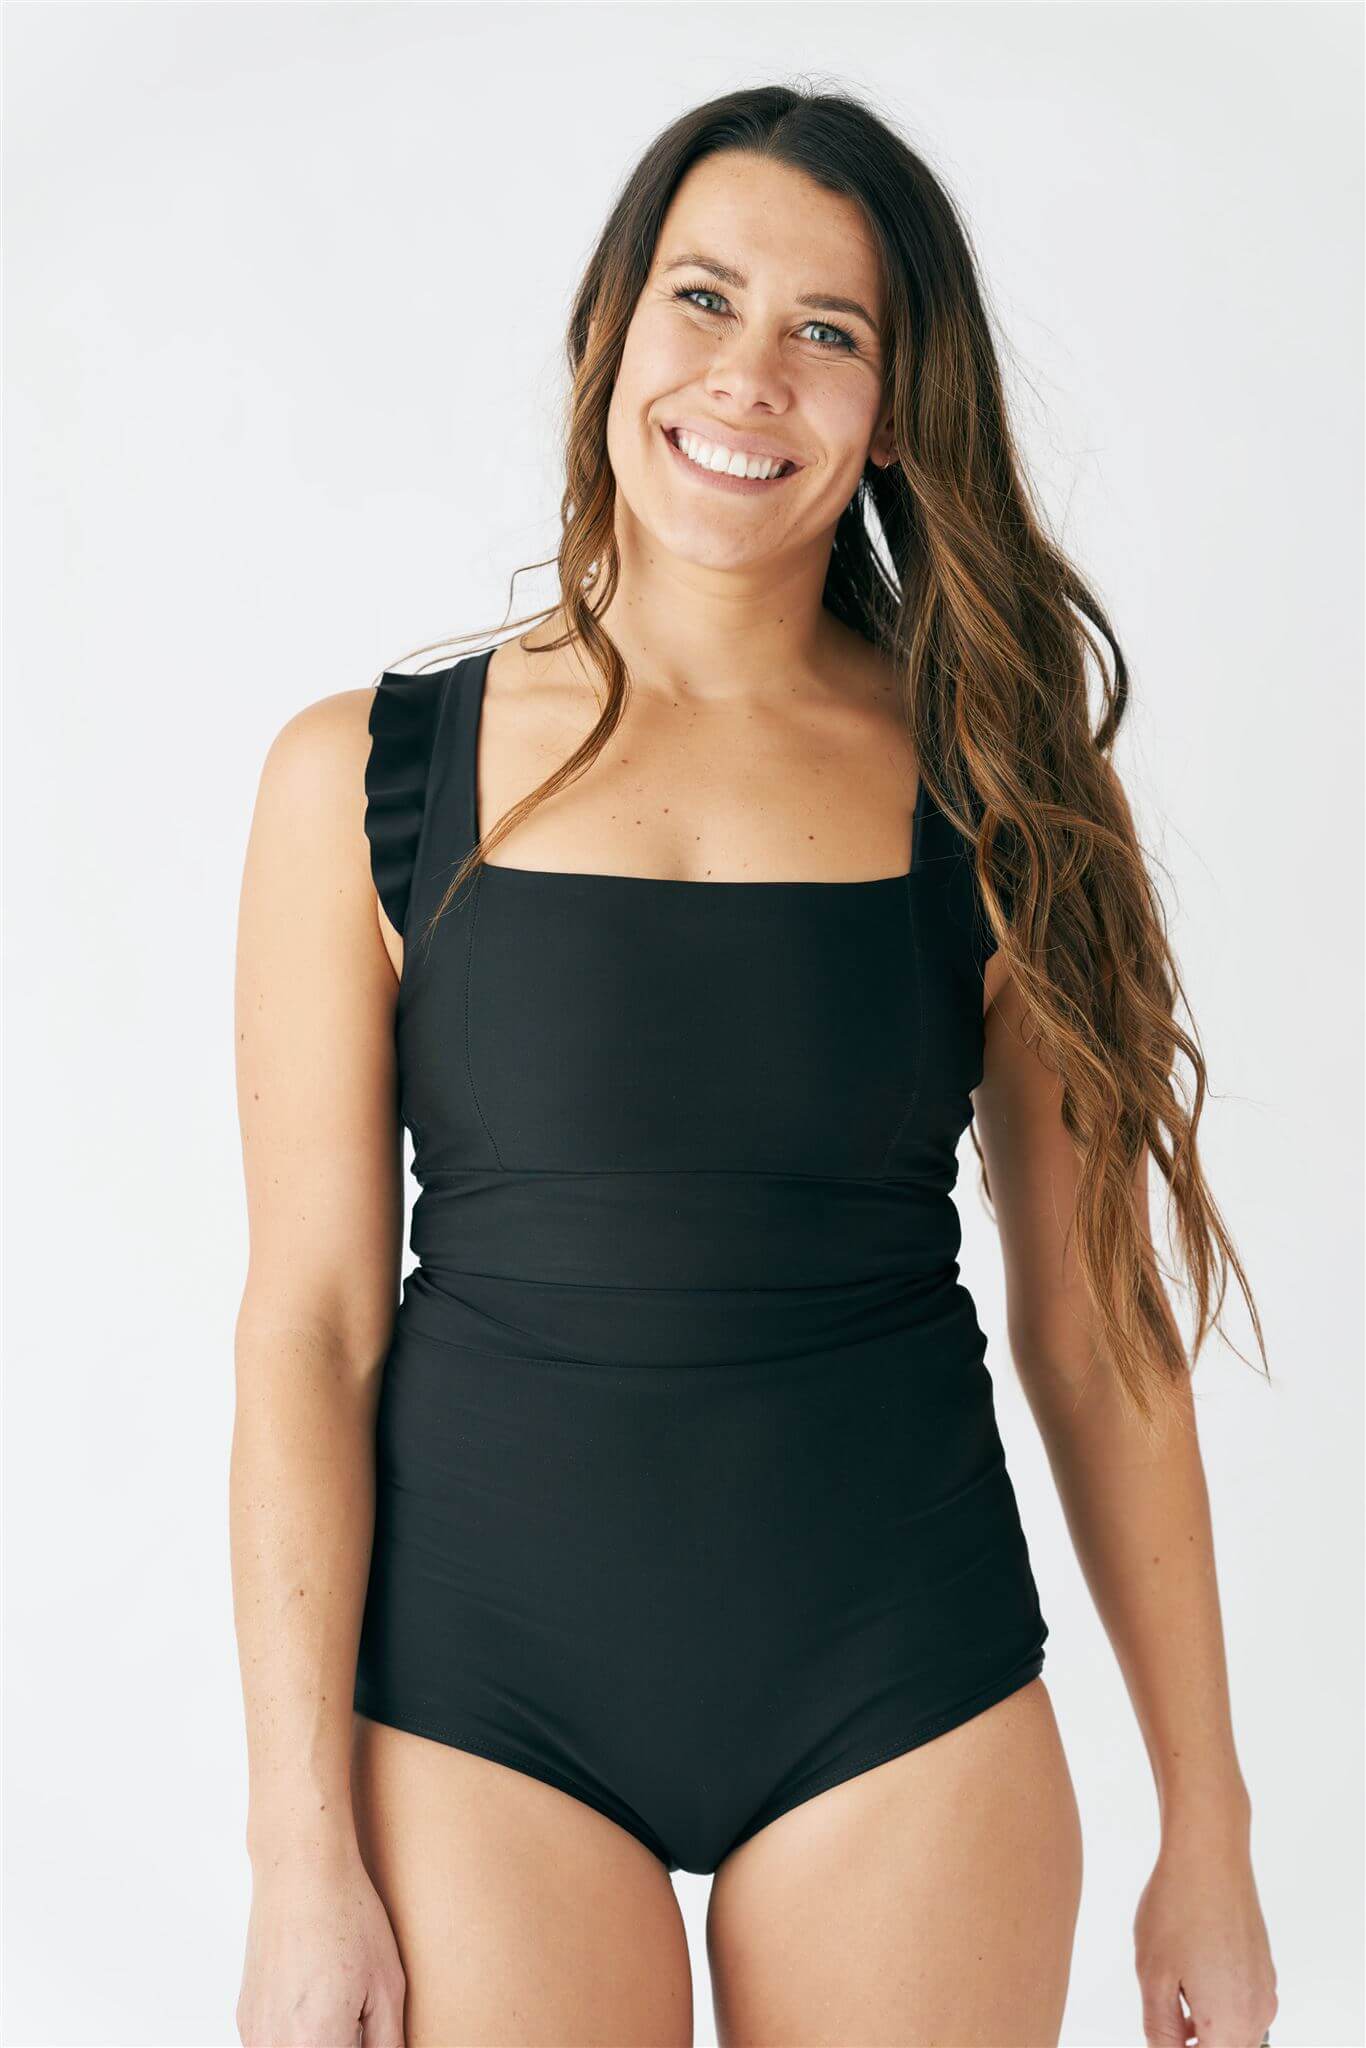 SALE! – Tagged SALE, Tops, Women's – June Loop Swimwear